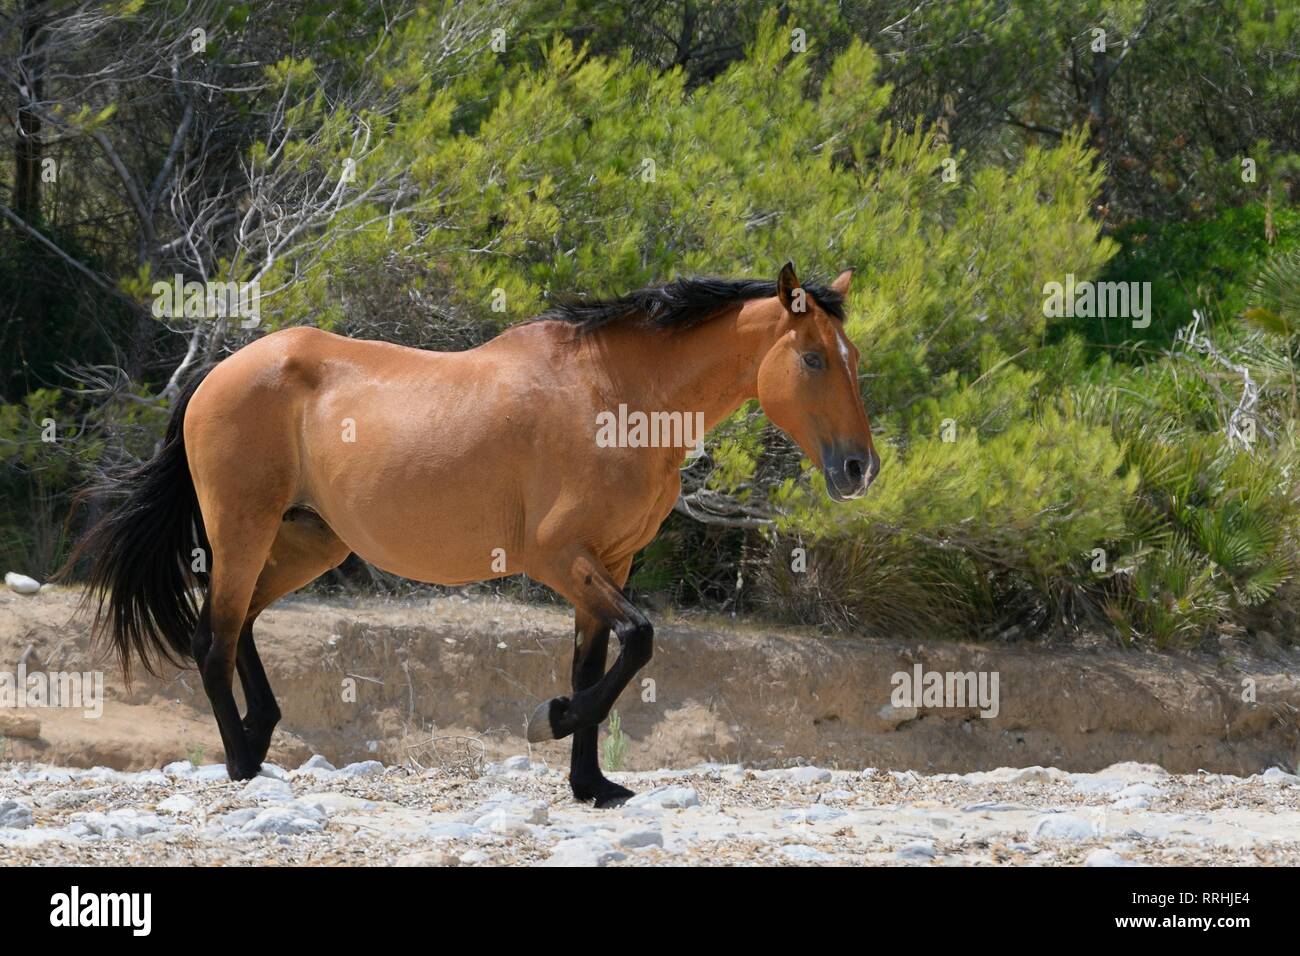 Feral horse (Equus caballus) walking on a remote sandy beach, near Arta, Mallorca, Spain, August. Stock Photo